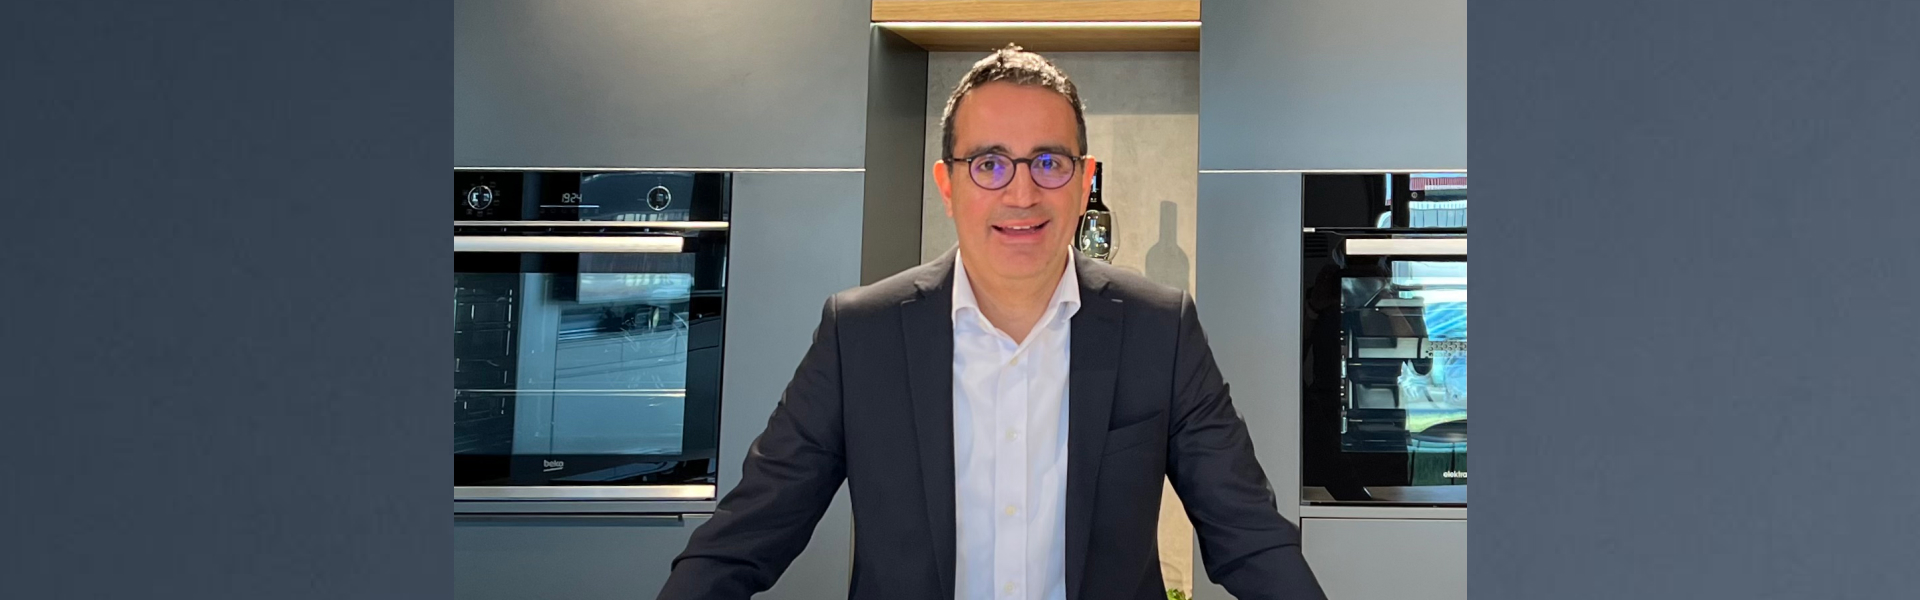 Dr. Evren Aksoy ist neuer Geschäftsführer bei Beko Grundig Deutschland: 